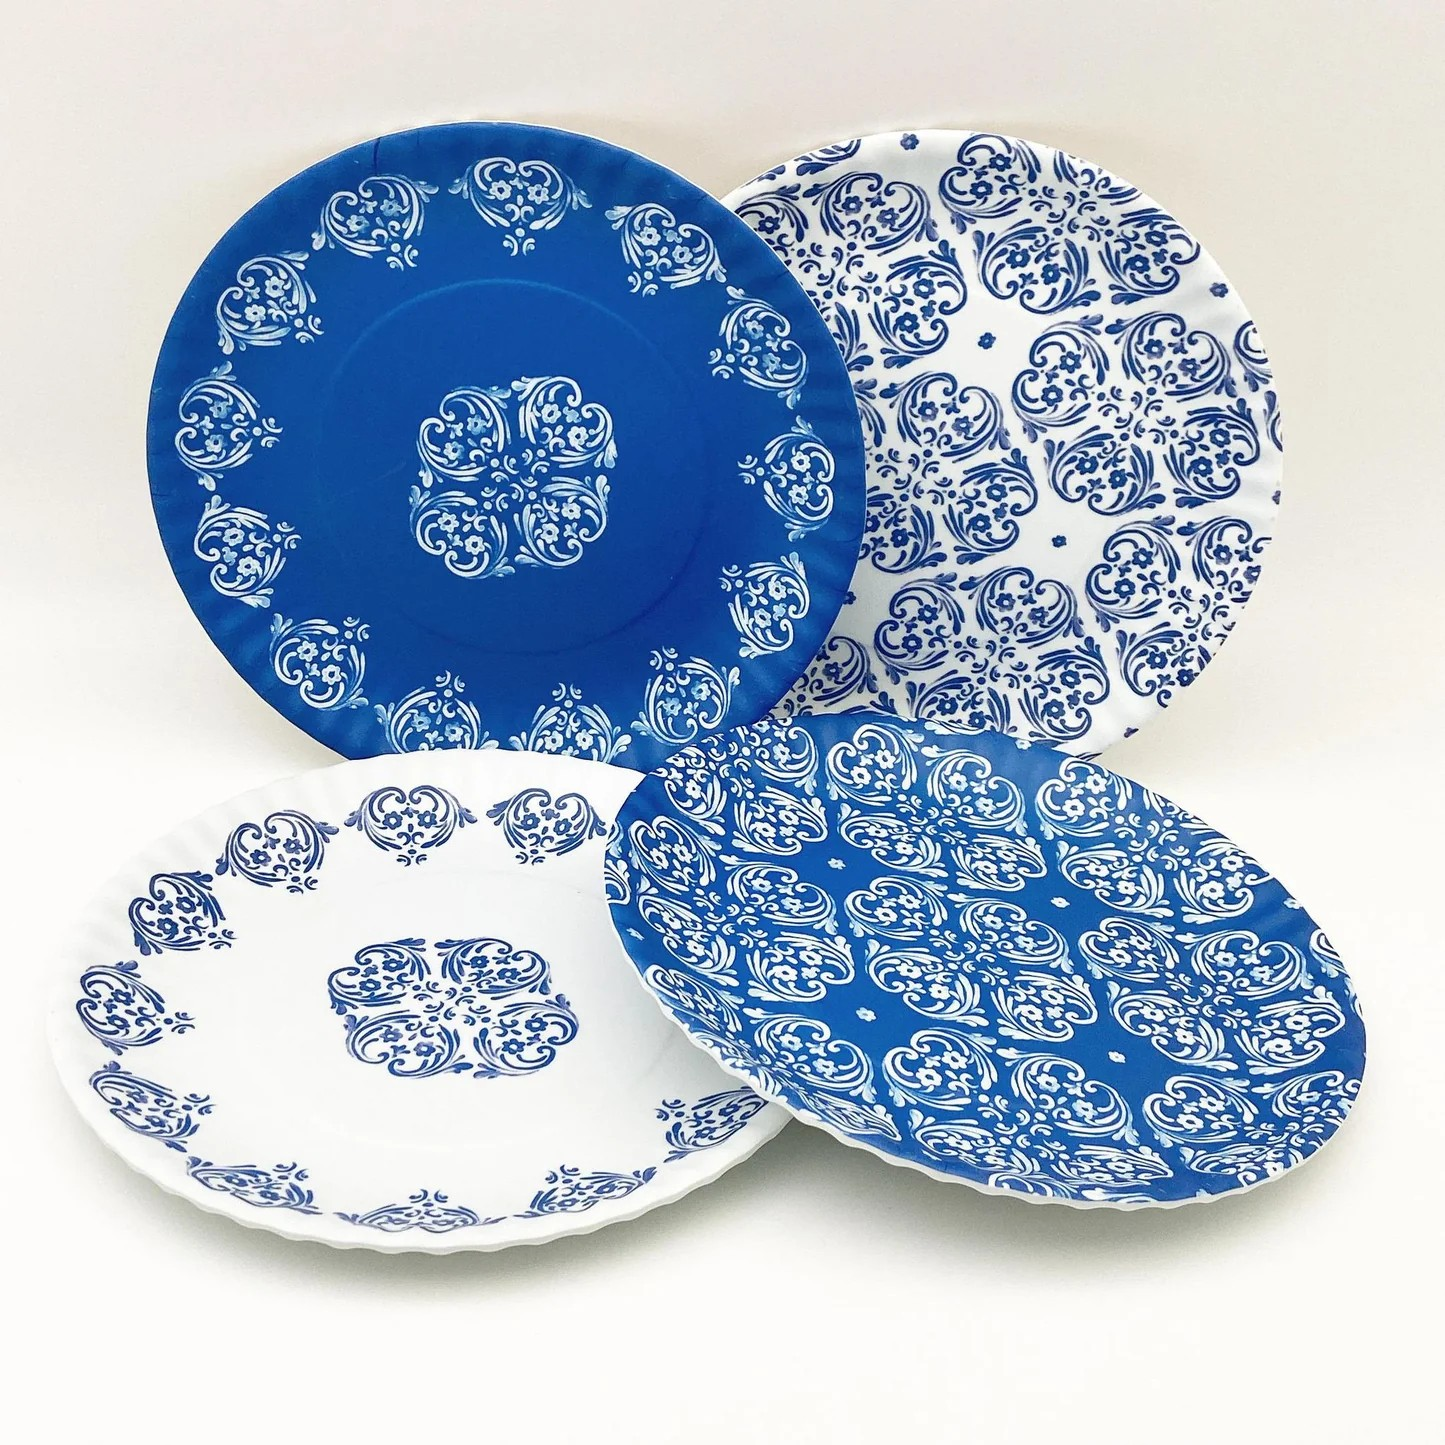 Blue & White Melamine "Paper" Plates - Set of 4